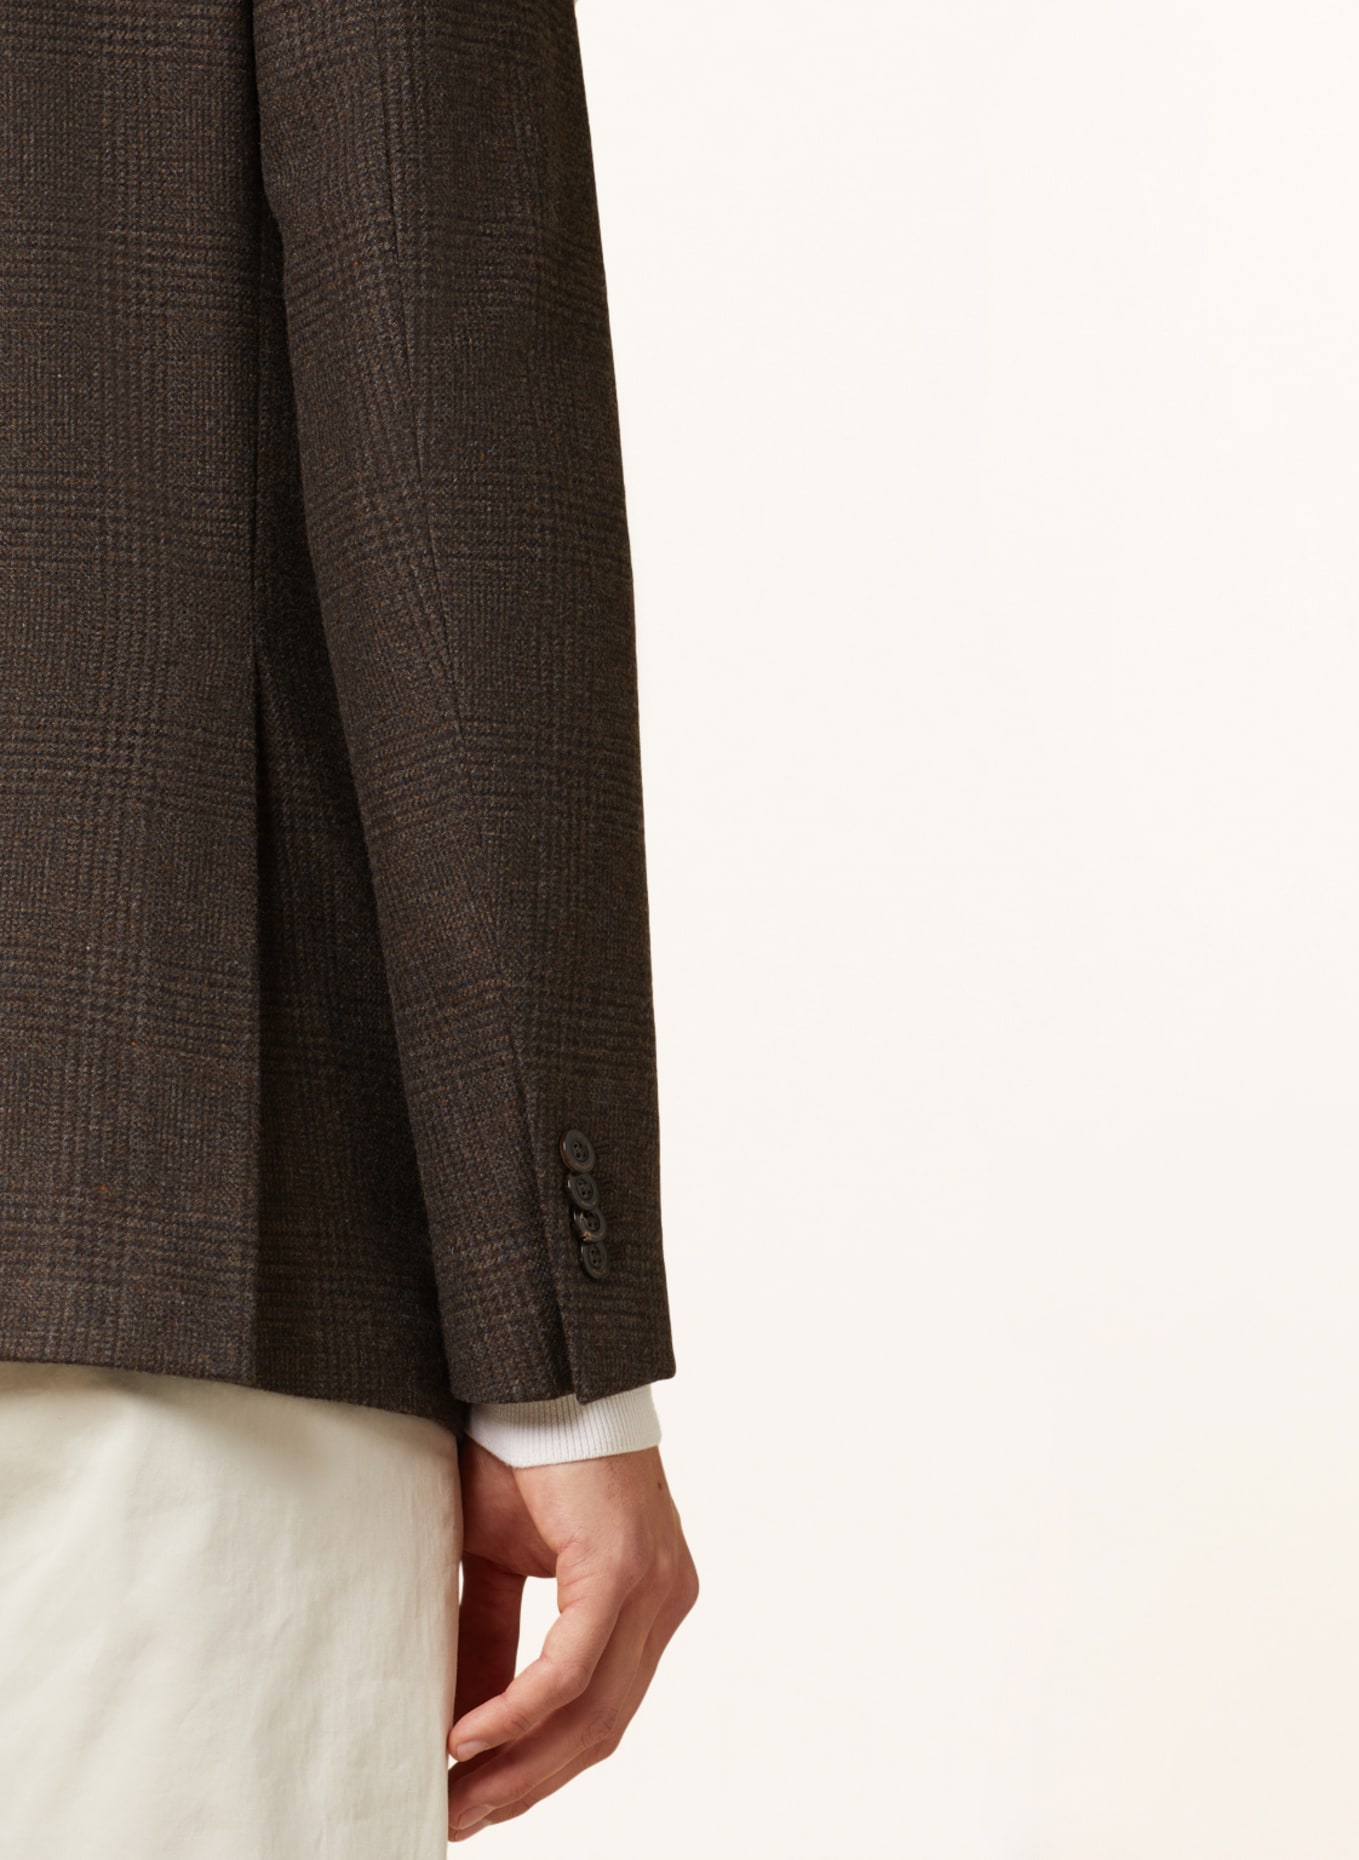 BOGLIOLI Tailored jacket regular fit, Color: DARK BROWN (Image 5)